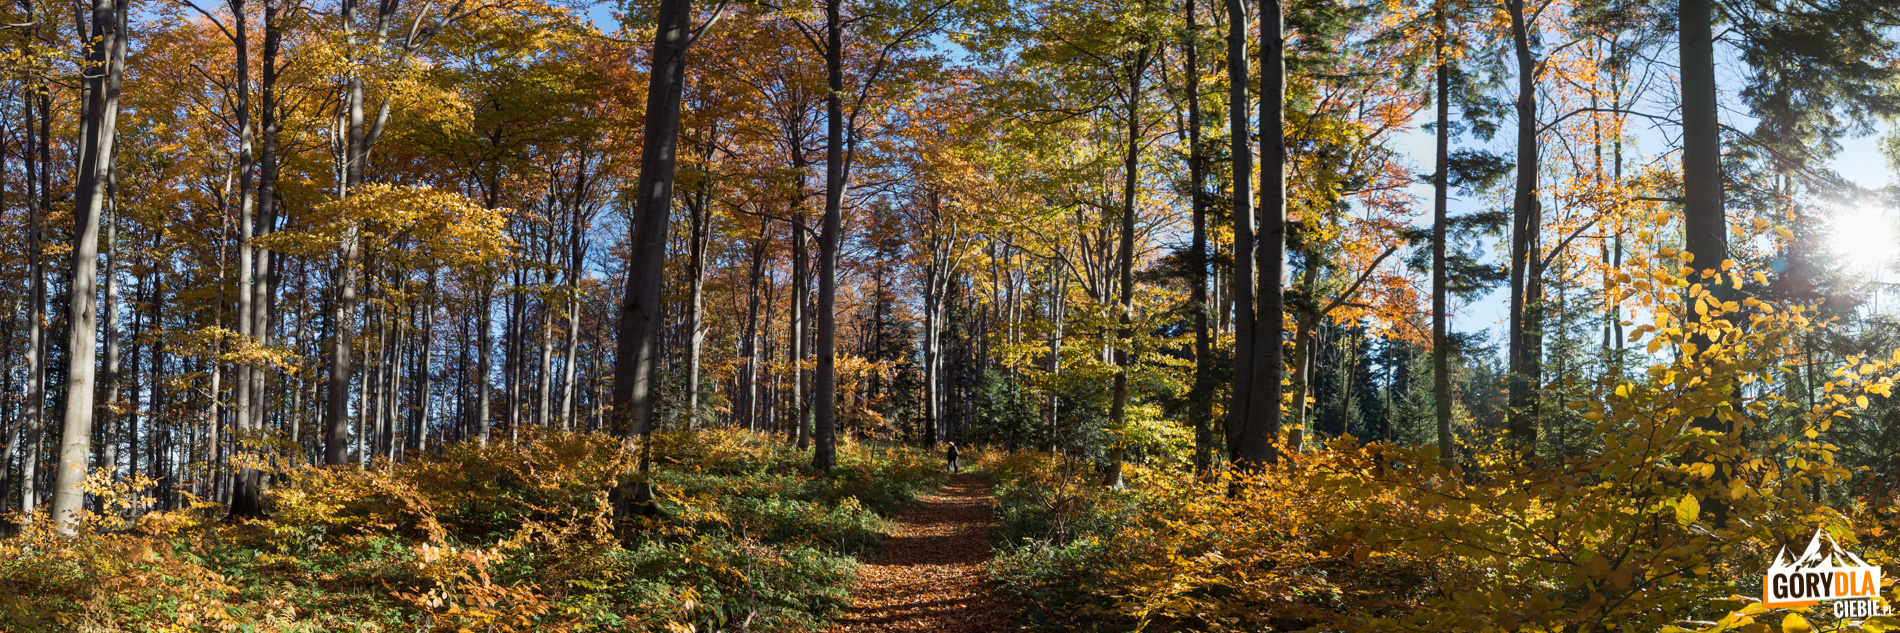 Ścieżka przez jesienny las na szczyt Kostrzy